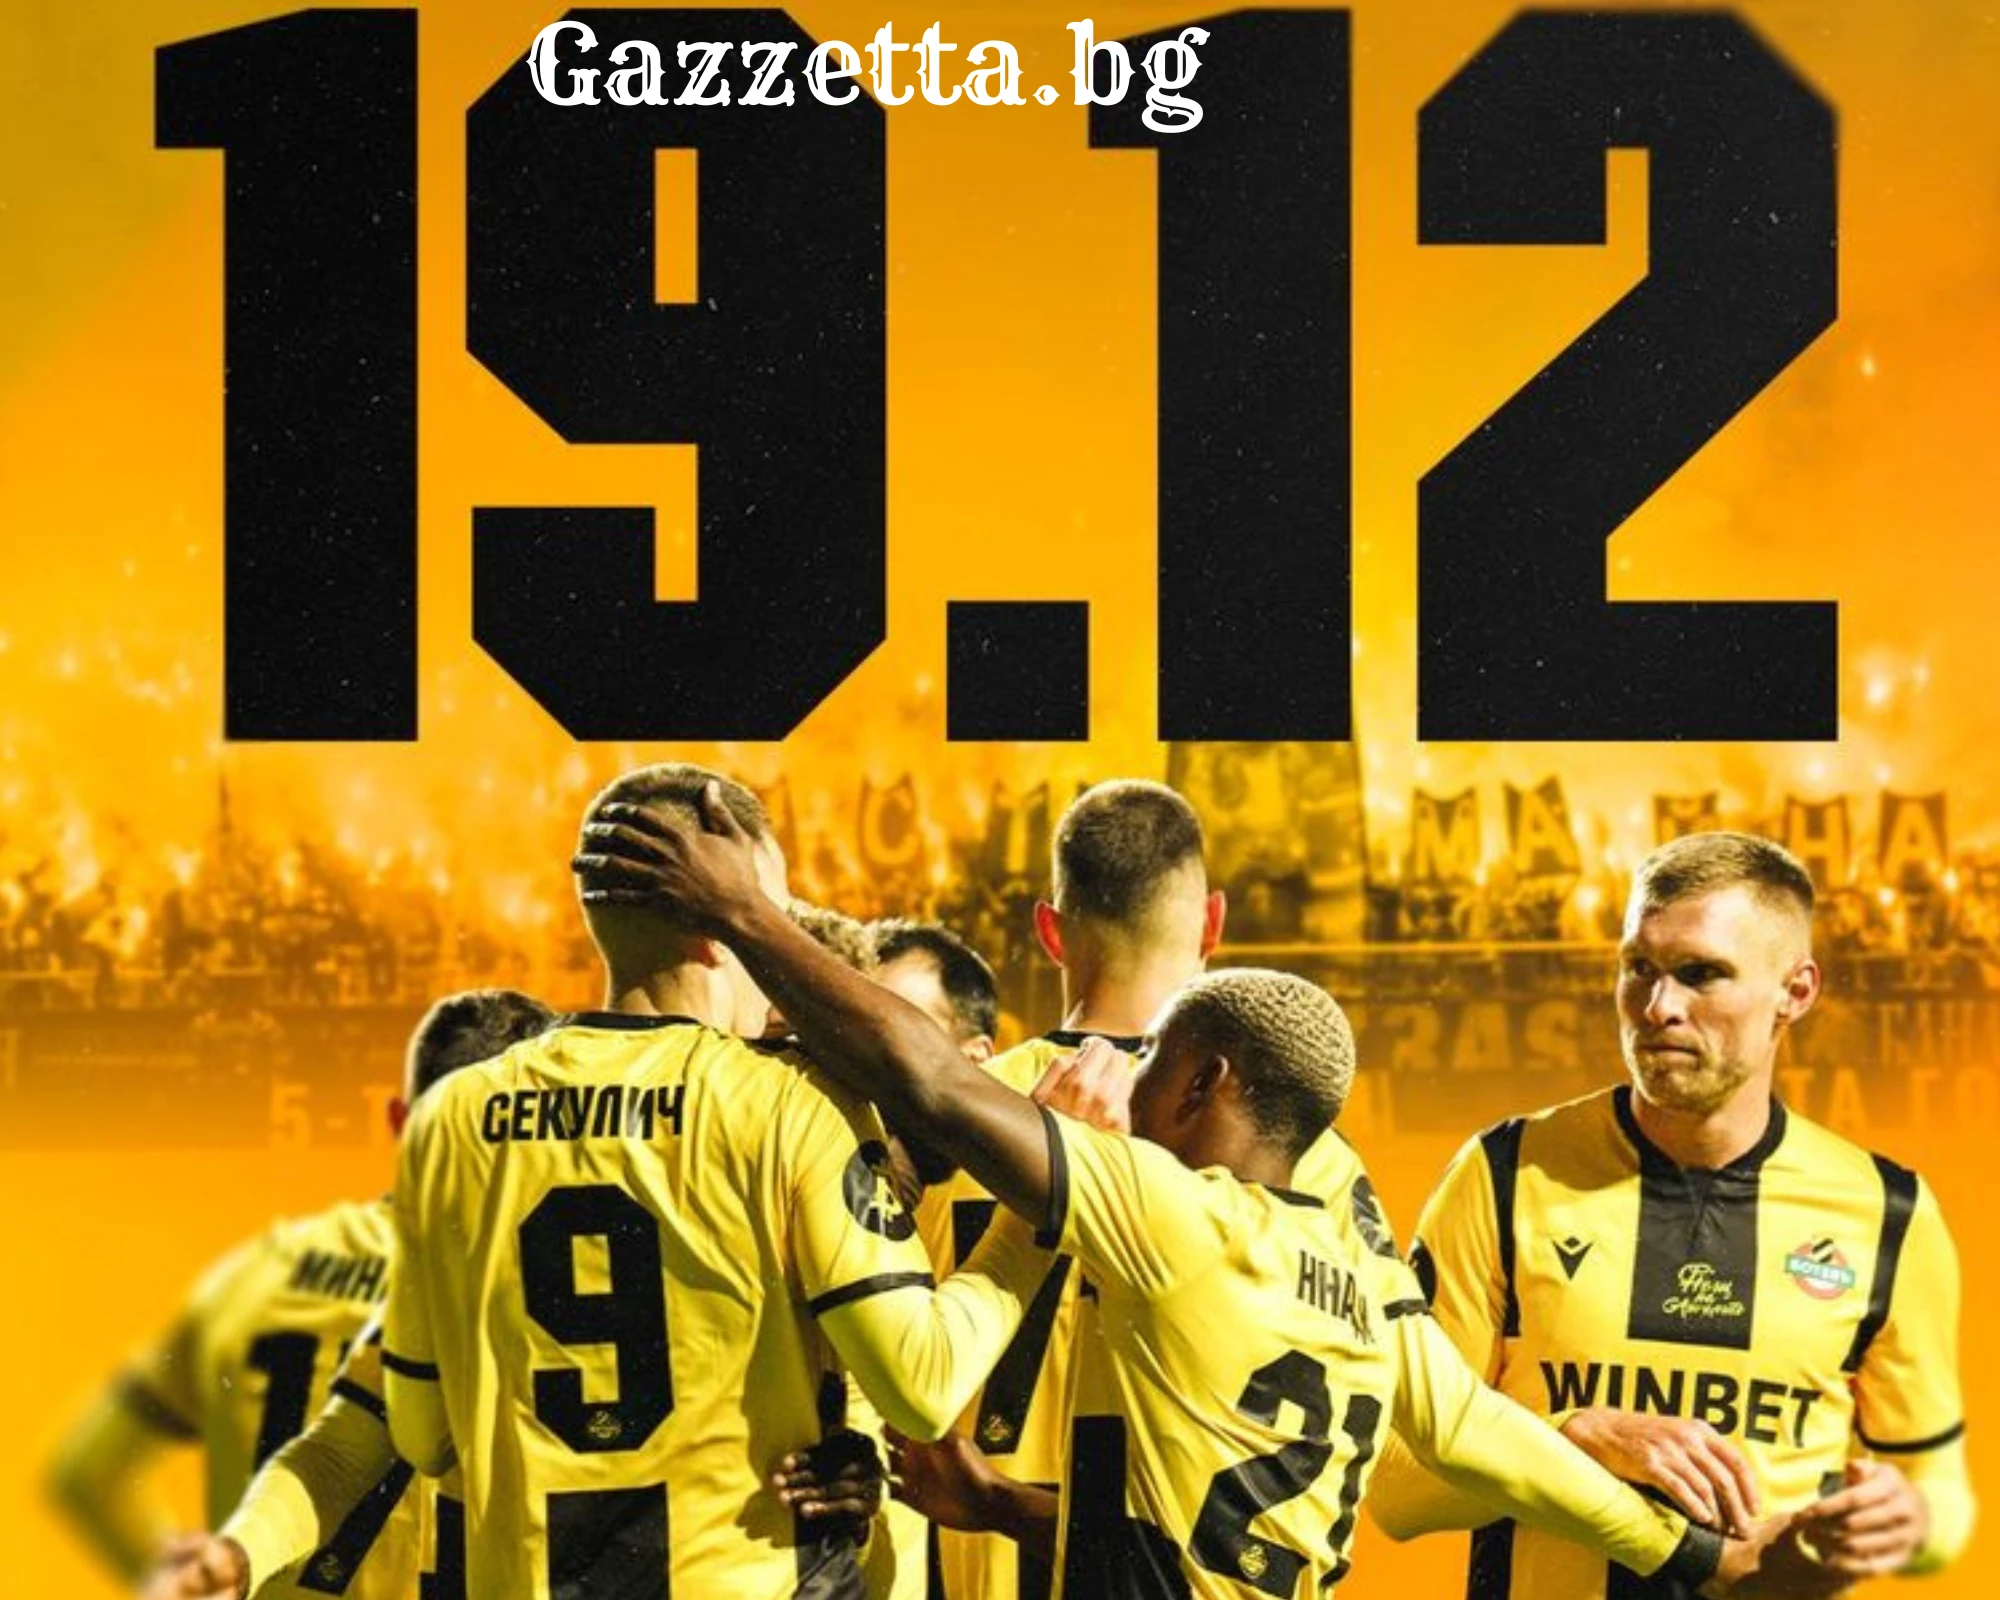 Ботев Пд:Датата 19.12 символизира началото на най-стария футболен клуб в България!